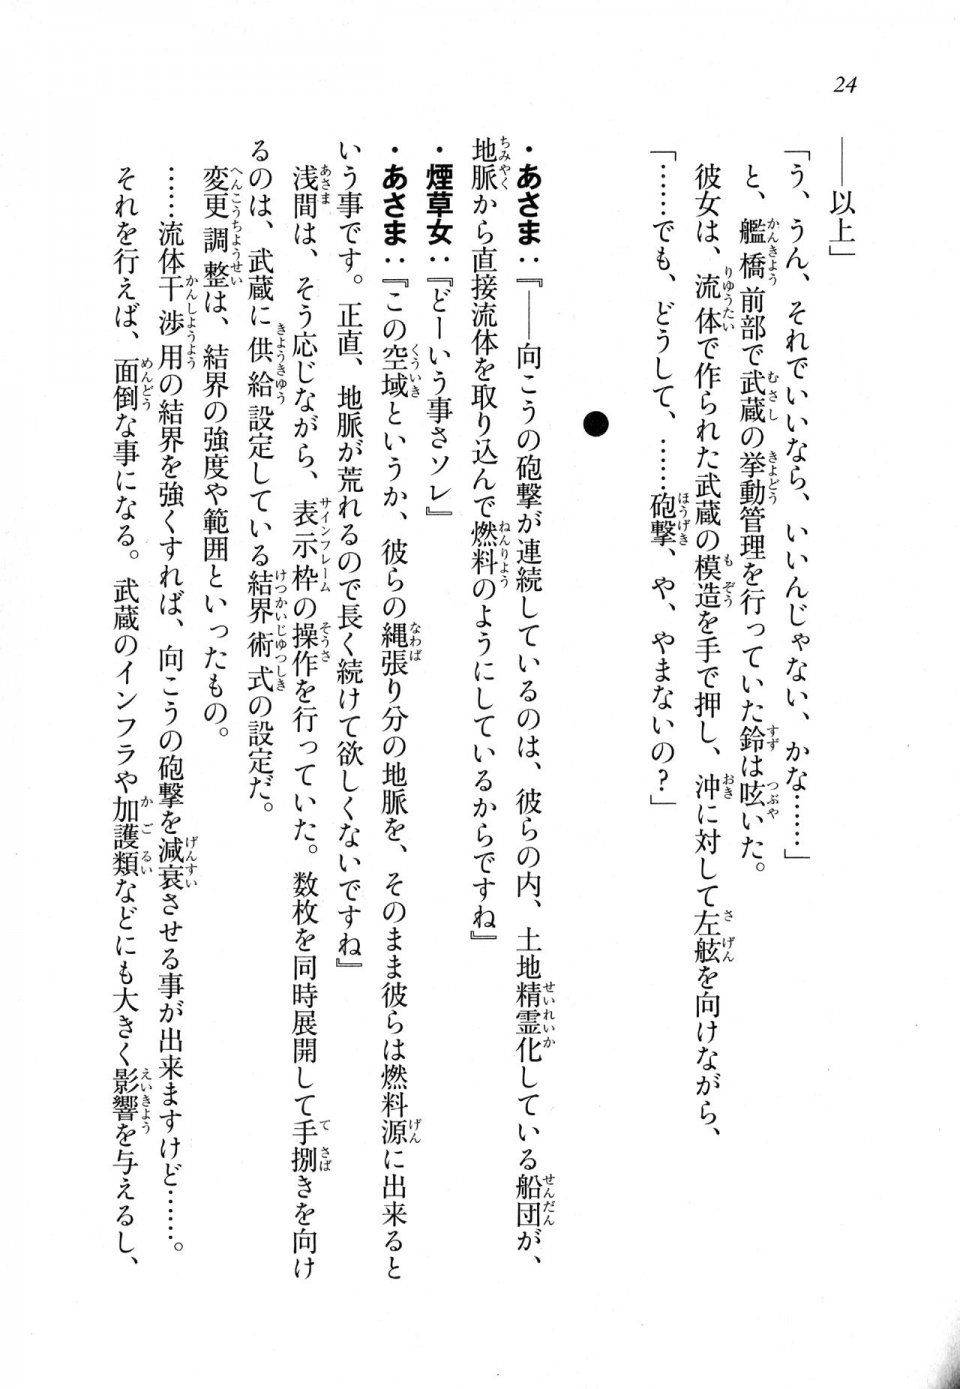 Kyoukai Senjou no Horizon LN Sidestory Vol 1 - Photo #23